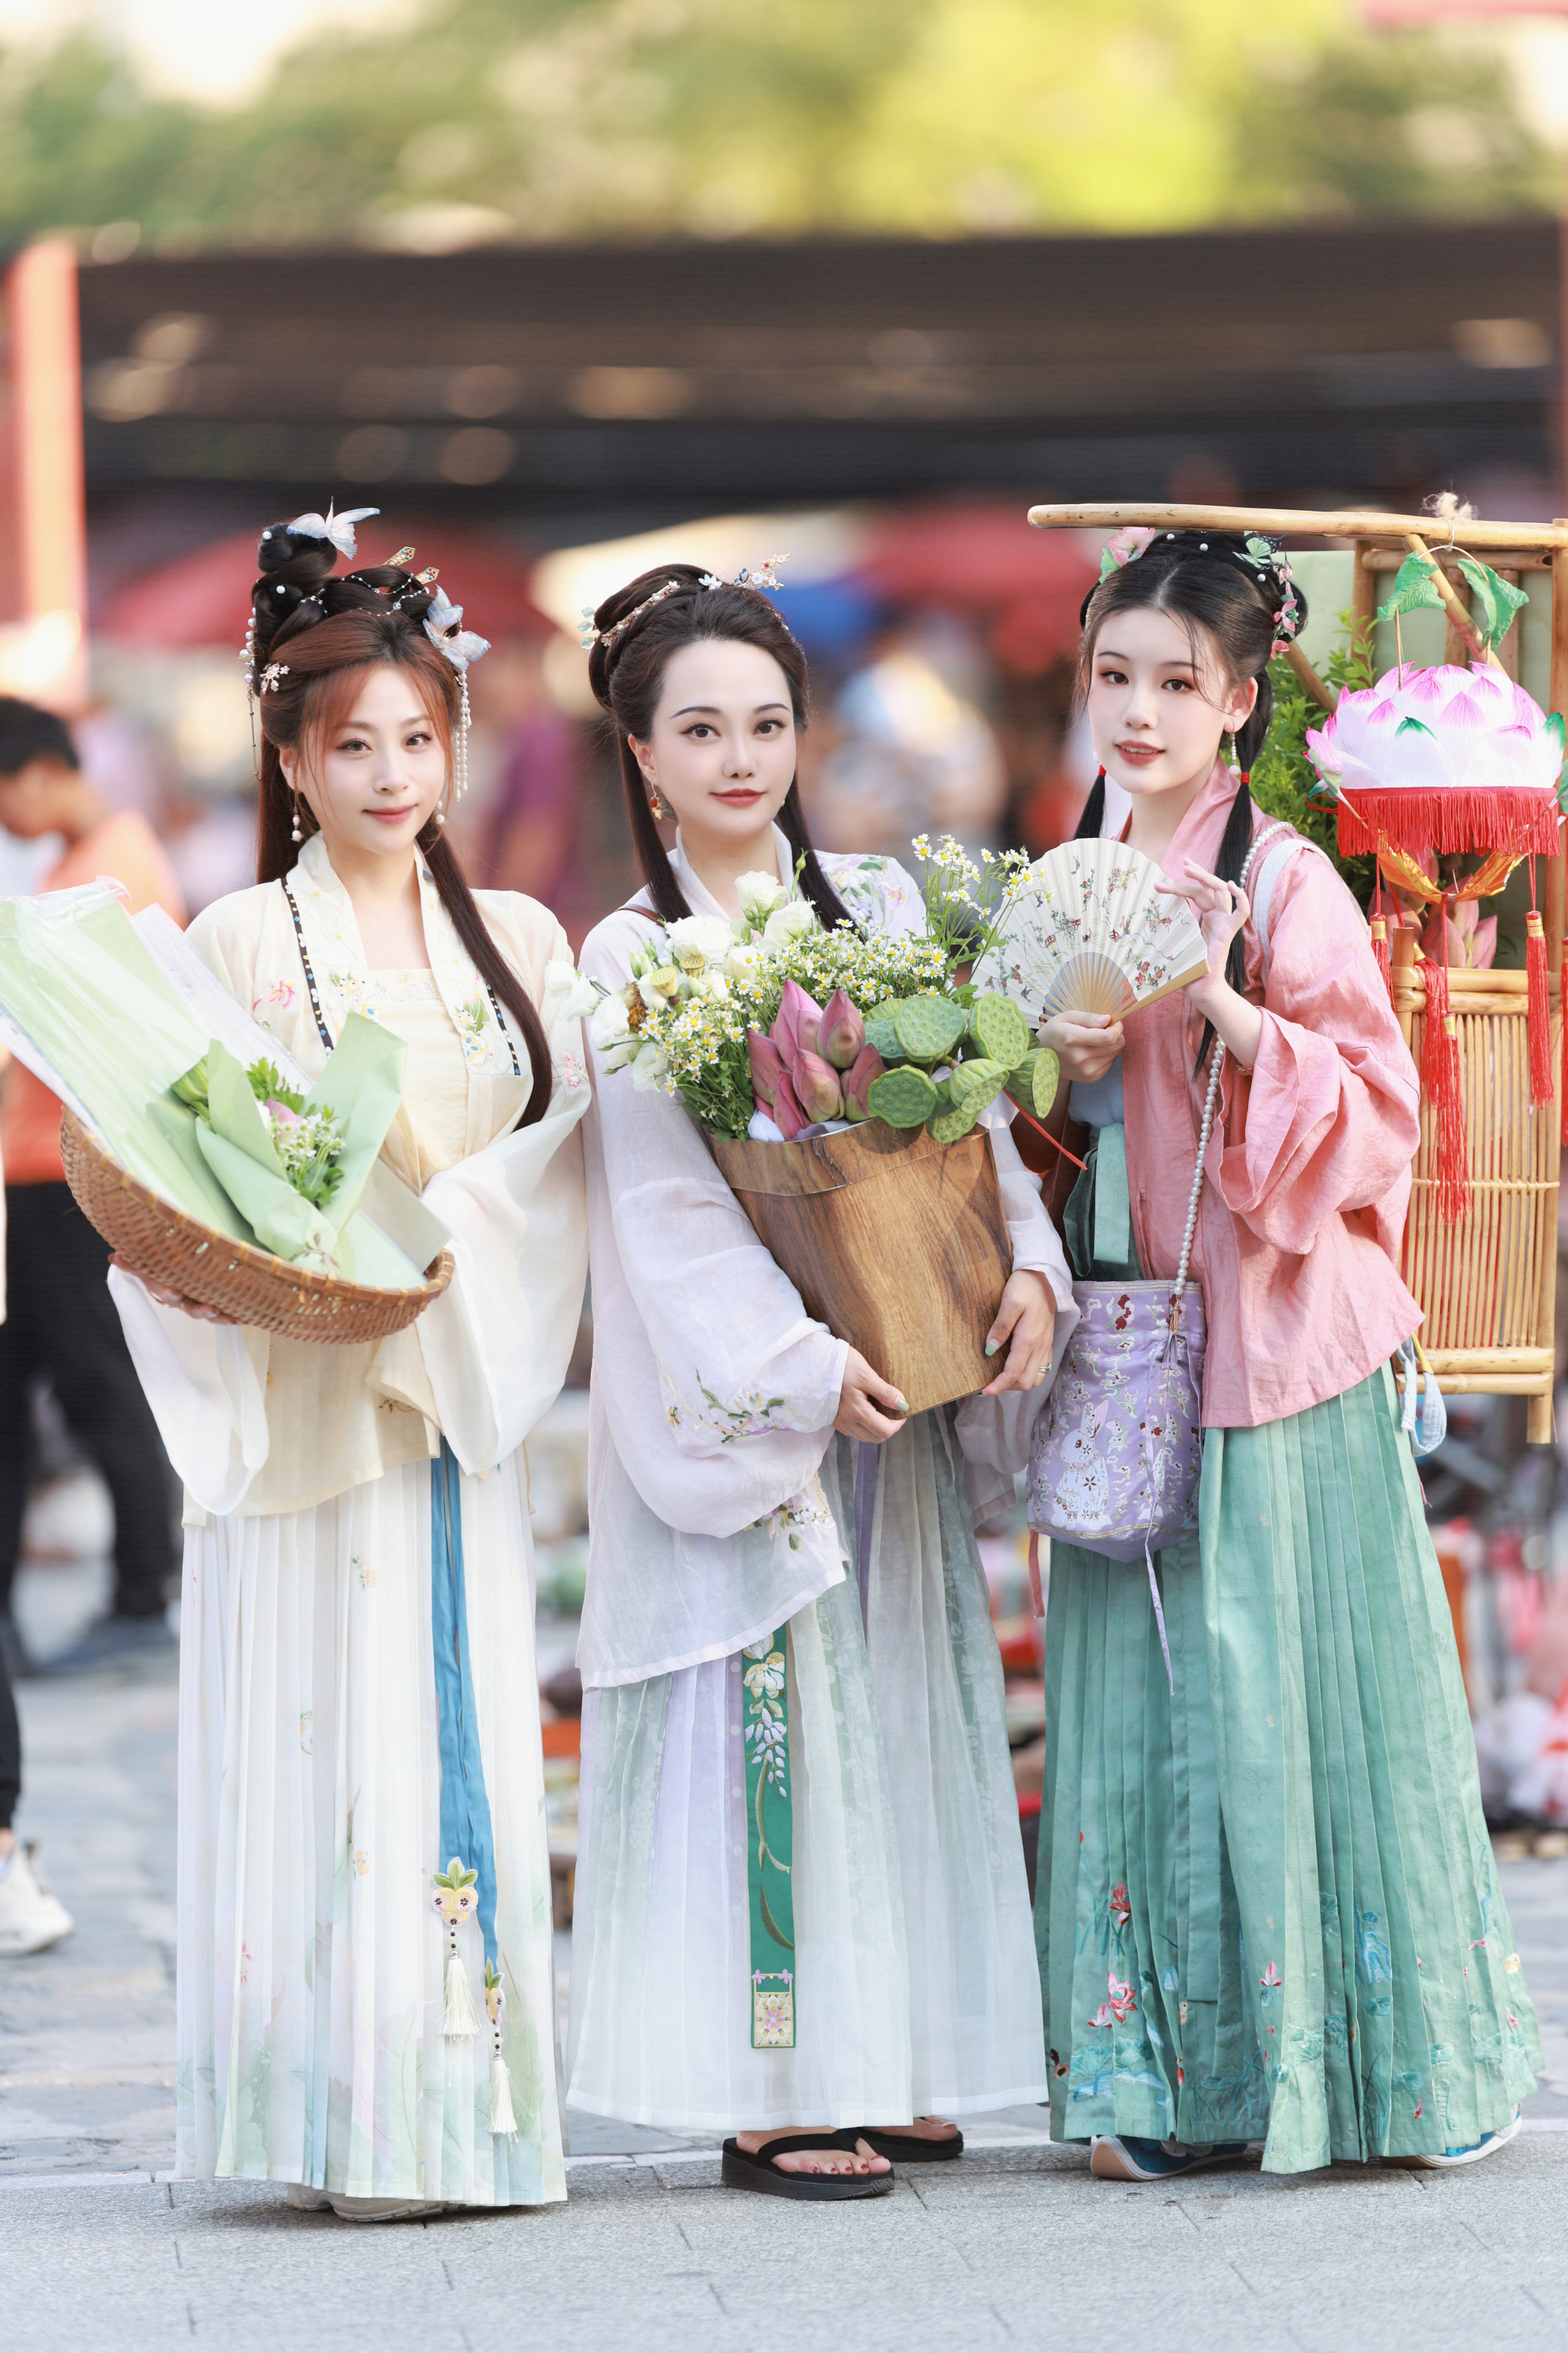 身着汉服的女孩在北京的一个市场上摆姿势拍照。  /中国环球电视网